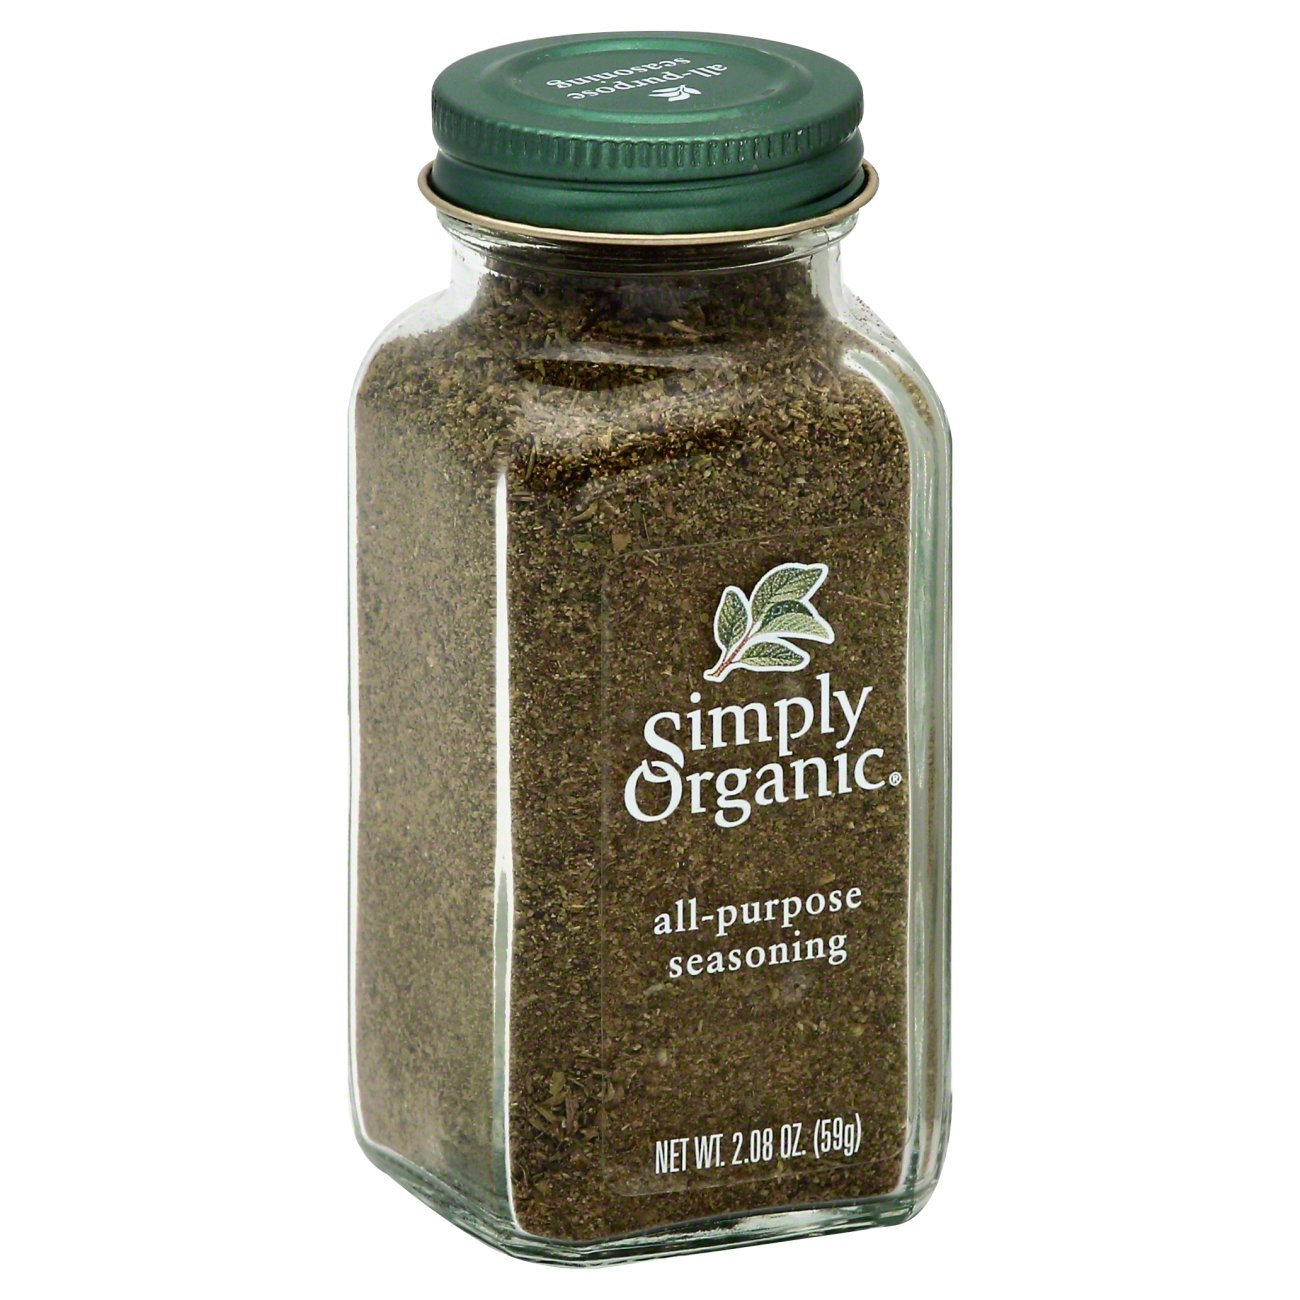 Simply Organic All-Purpose Seasoning - Shop Spice Mixes at H-E-B